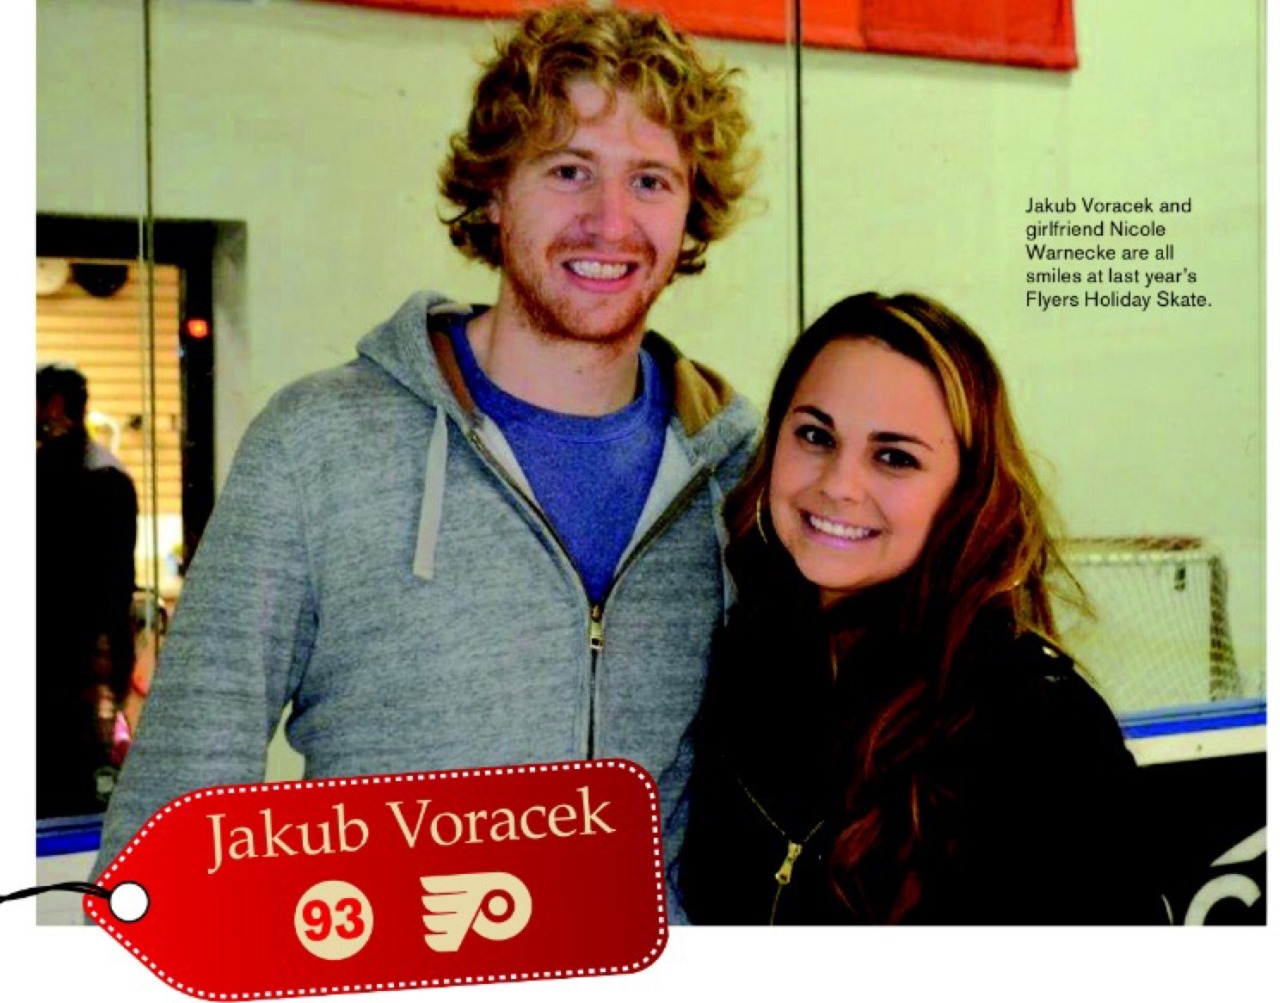 Wives and Girlfriends of NHL players — Jakub Voracek & Nicole Warneke